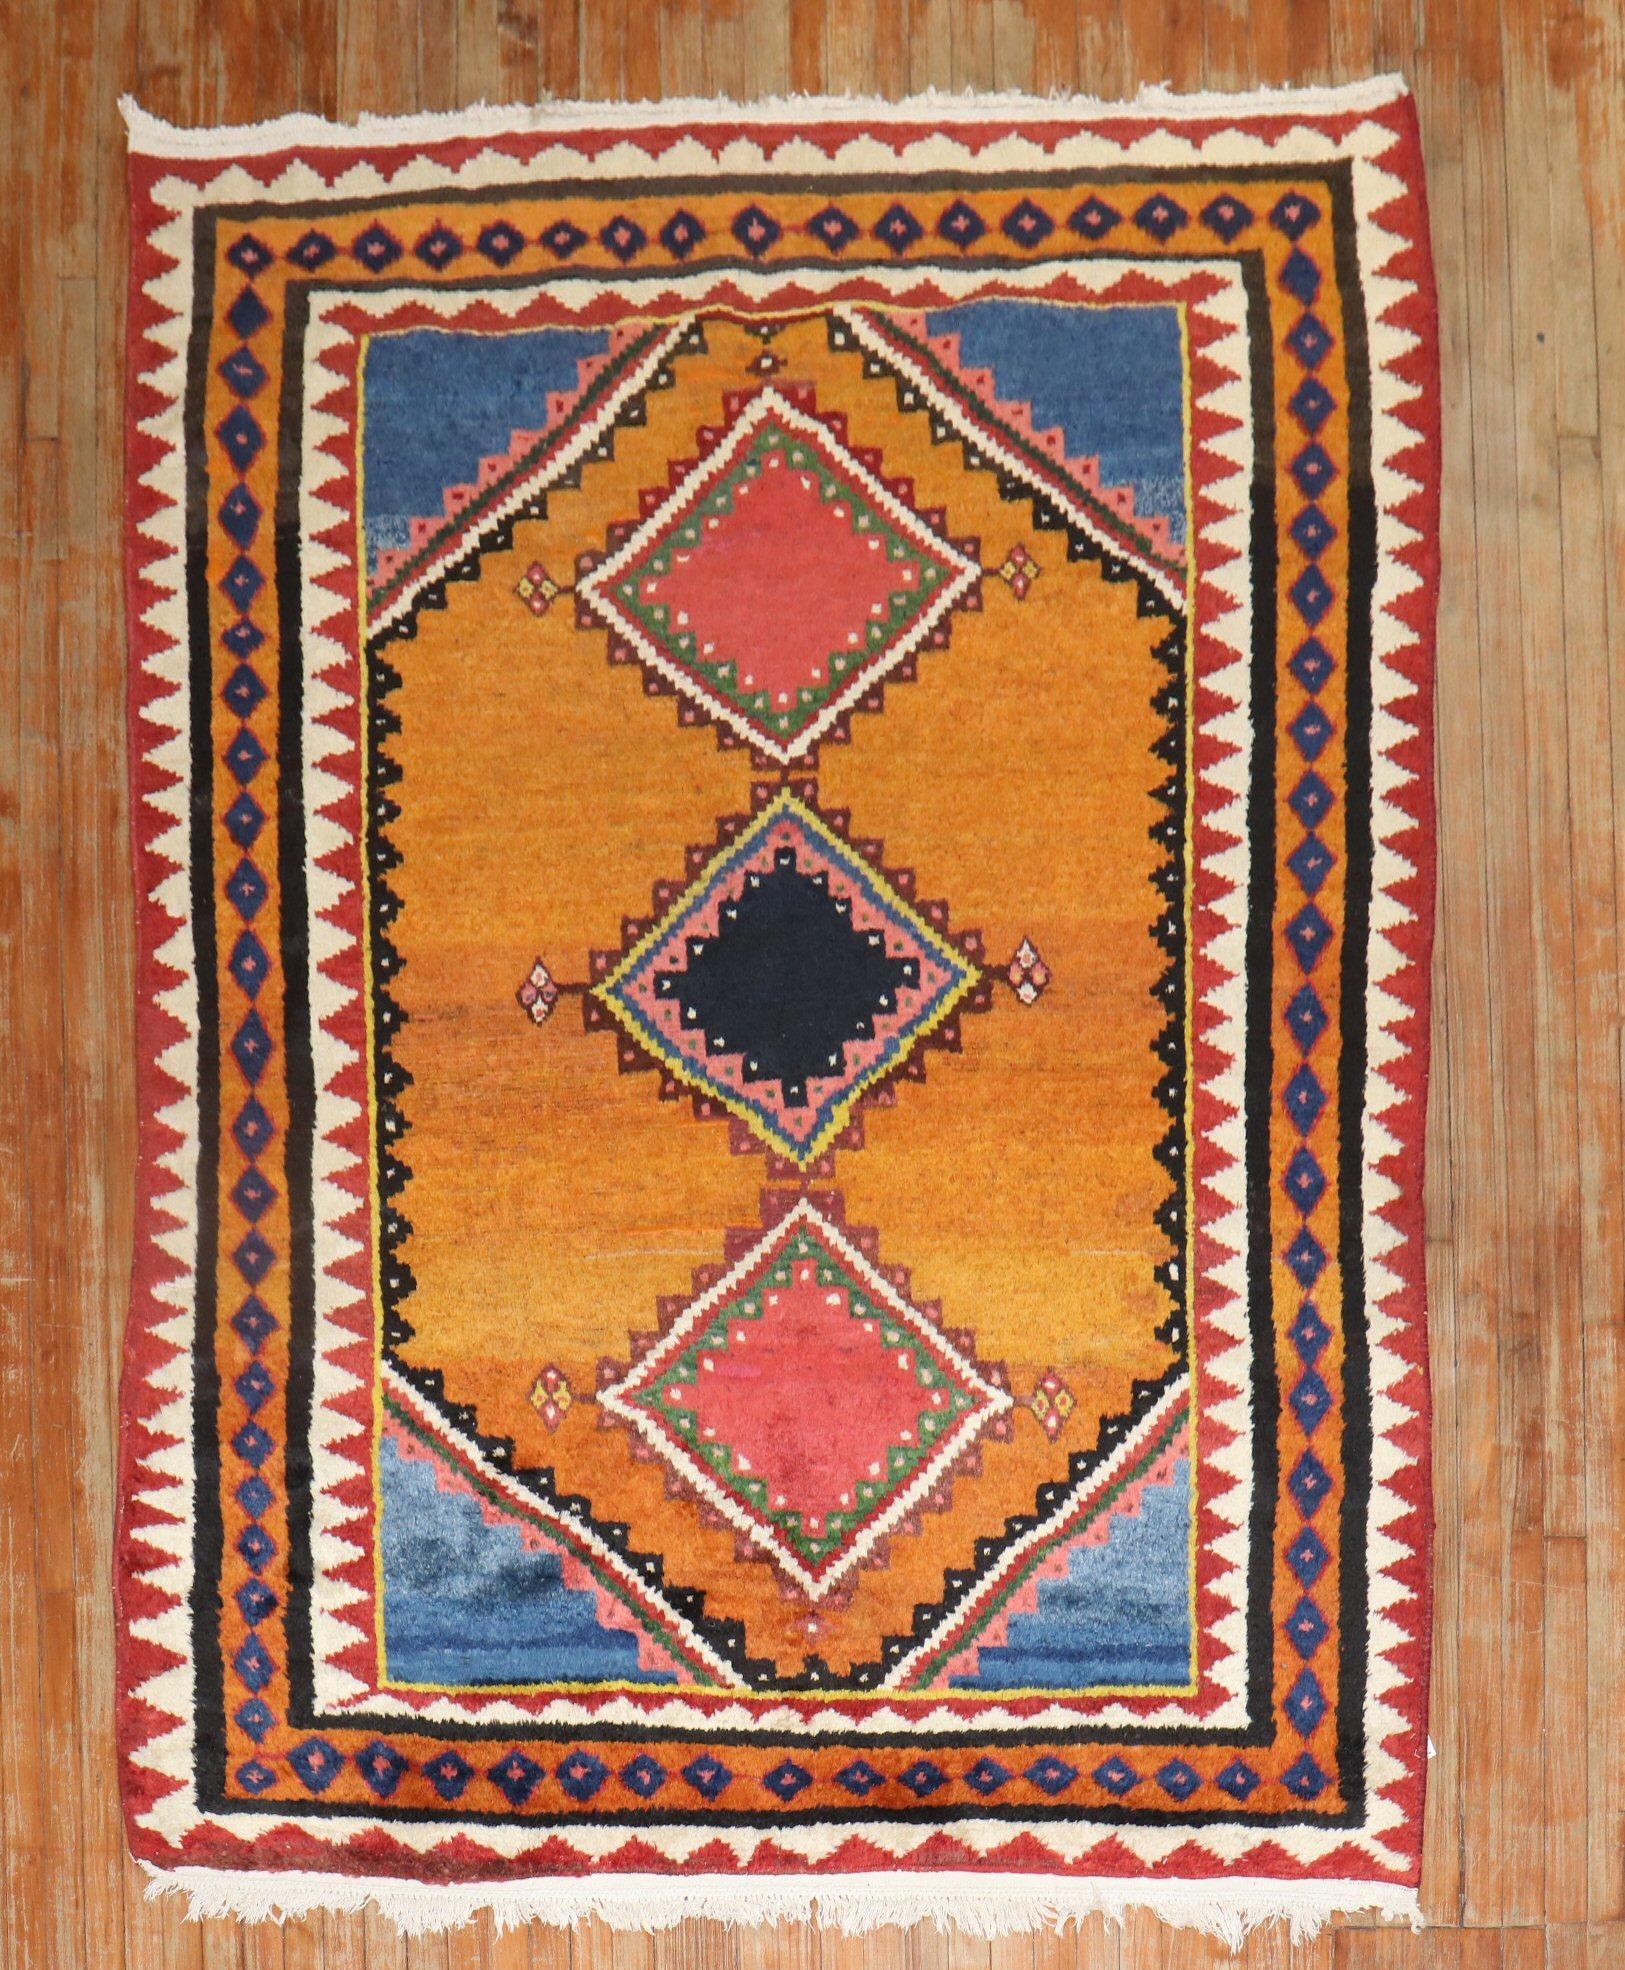 Tapis géométrique persan Gabbeh de taille intermédiaire du début du 20e siècle provenant de la collection JP WILLBORG en Europe.

Mesures : 5'10'' x 7'11''.